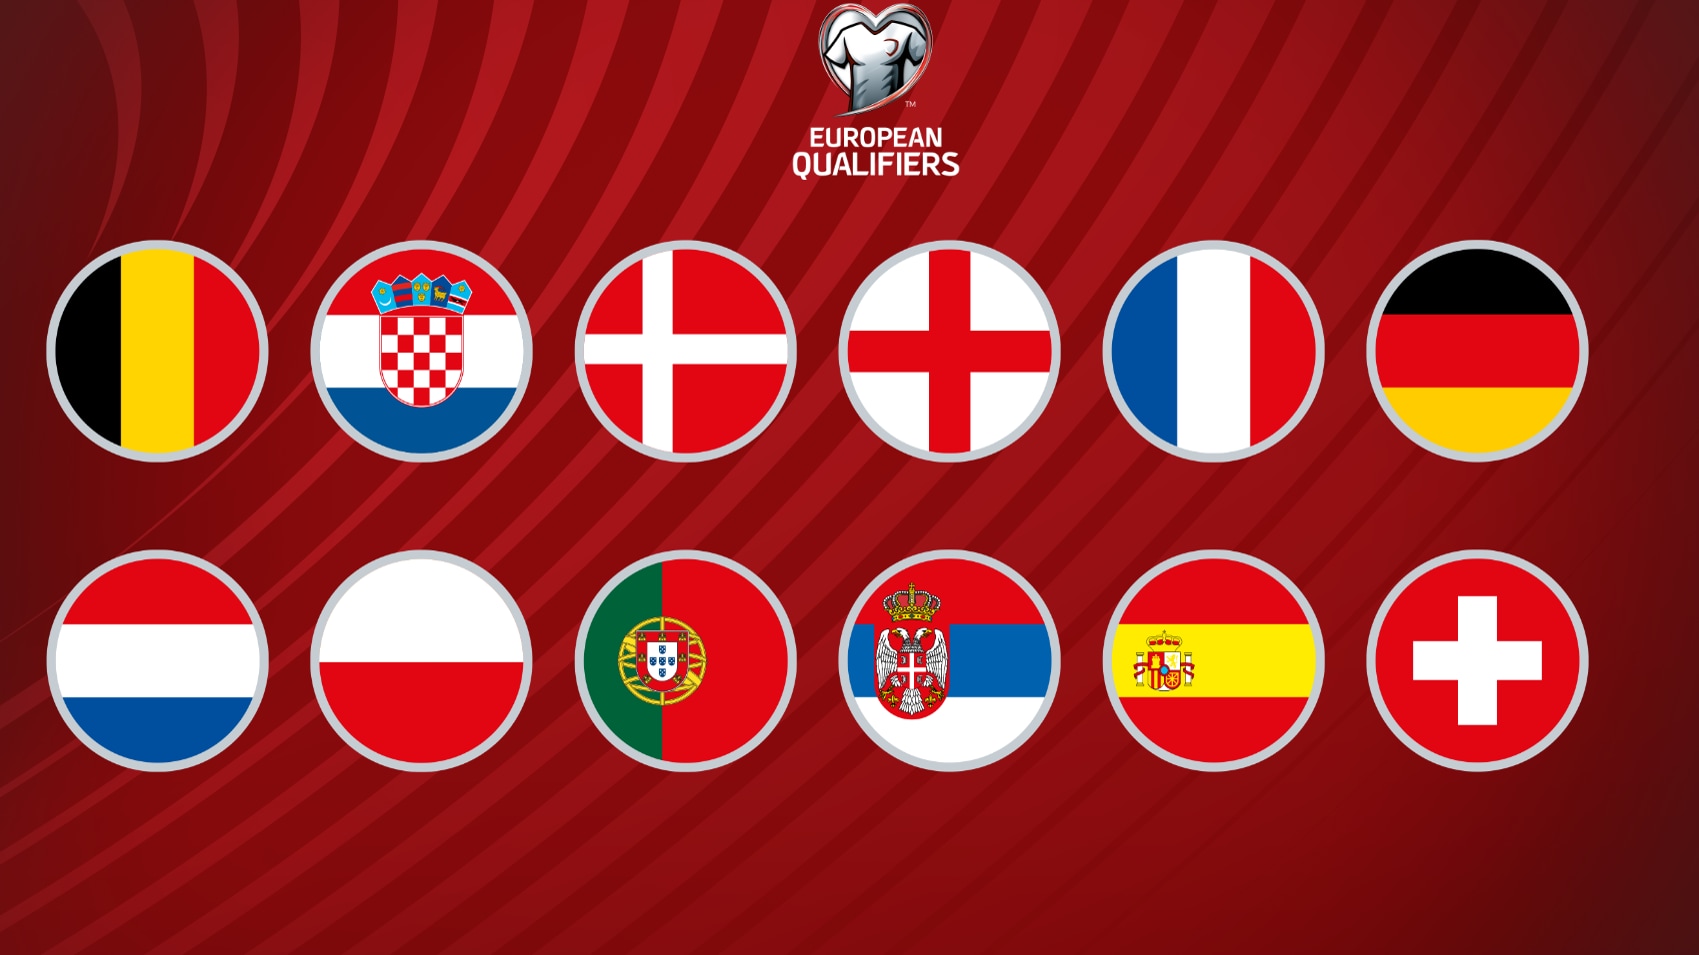 ¿Cuántos equipos europeos clasifican al Mundial 2022